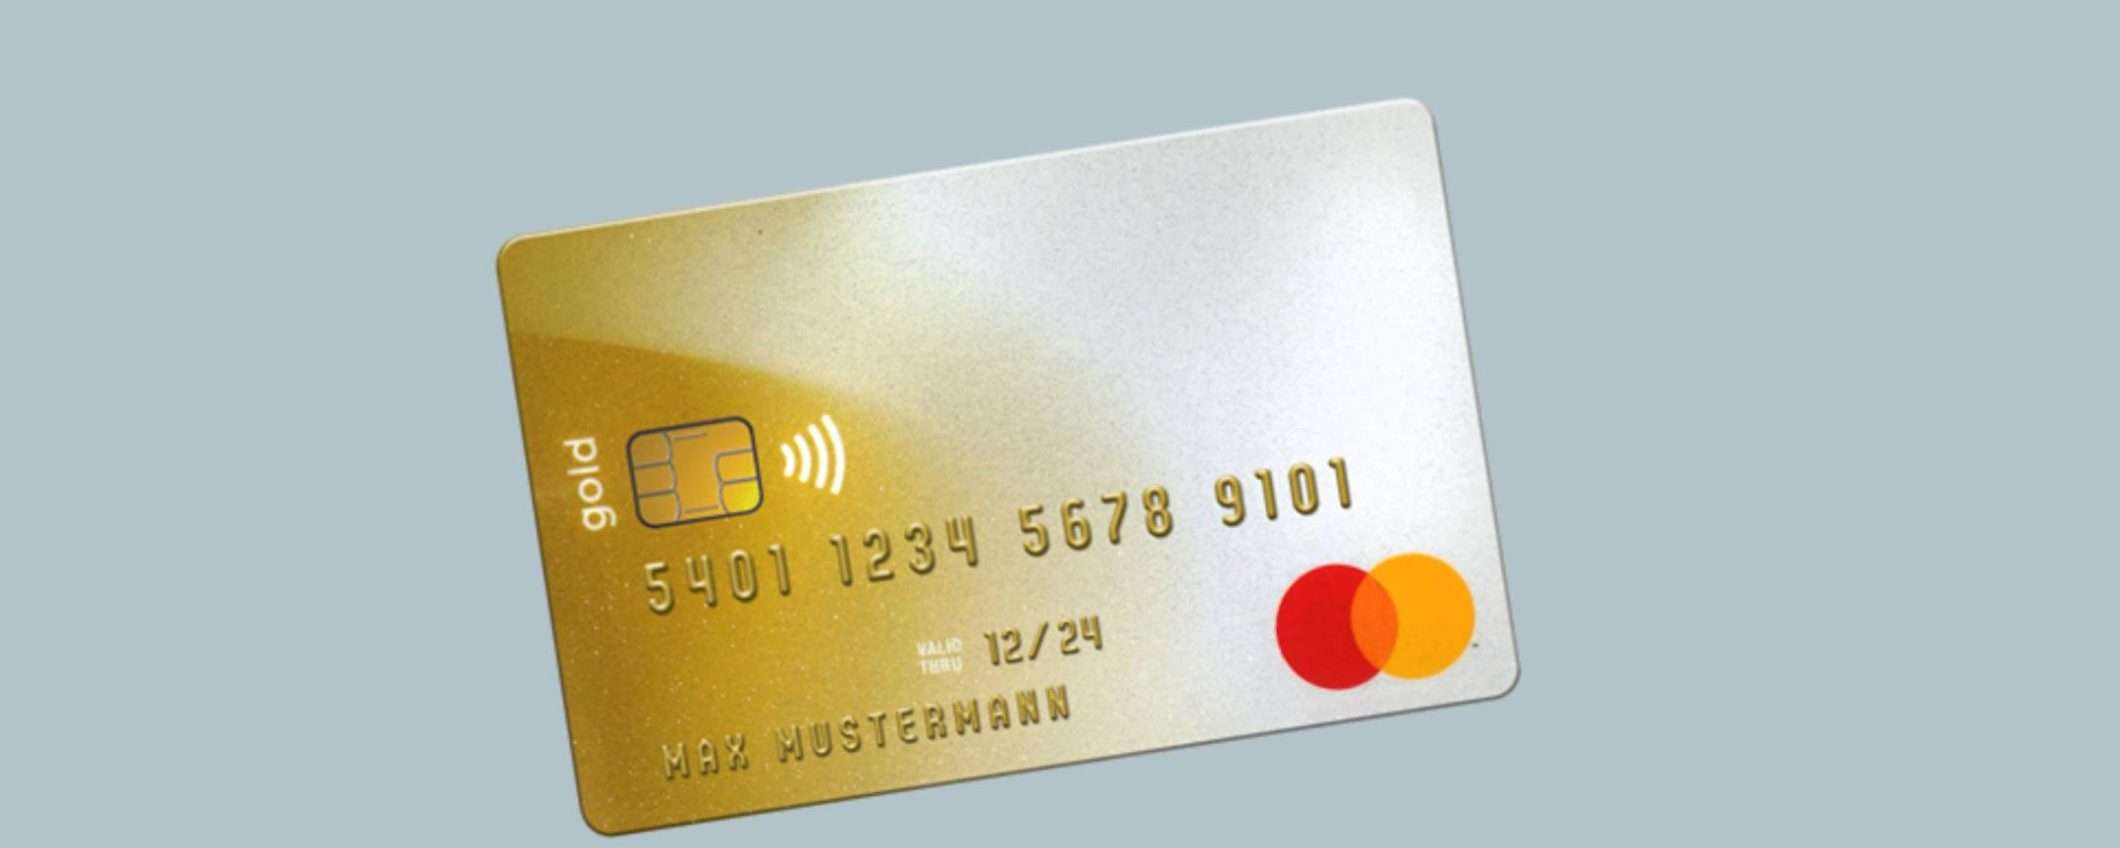 Carta YOU: carta di credito Mastercard senza commissioni annuali